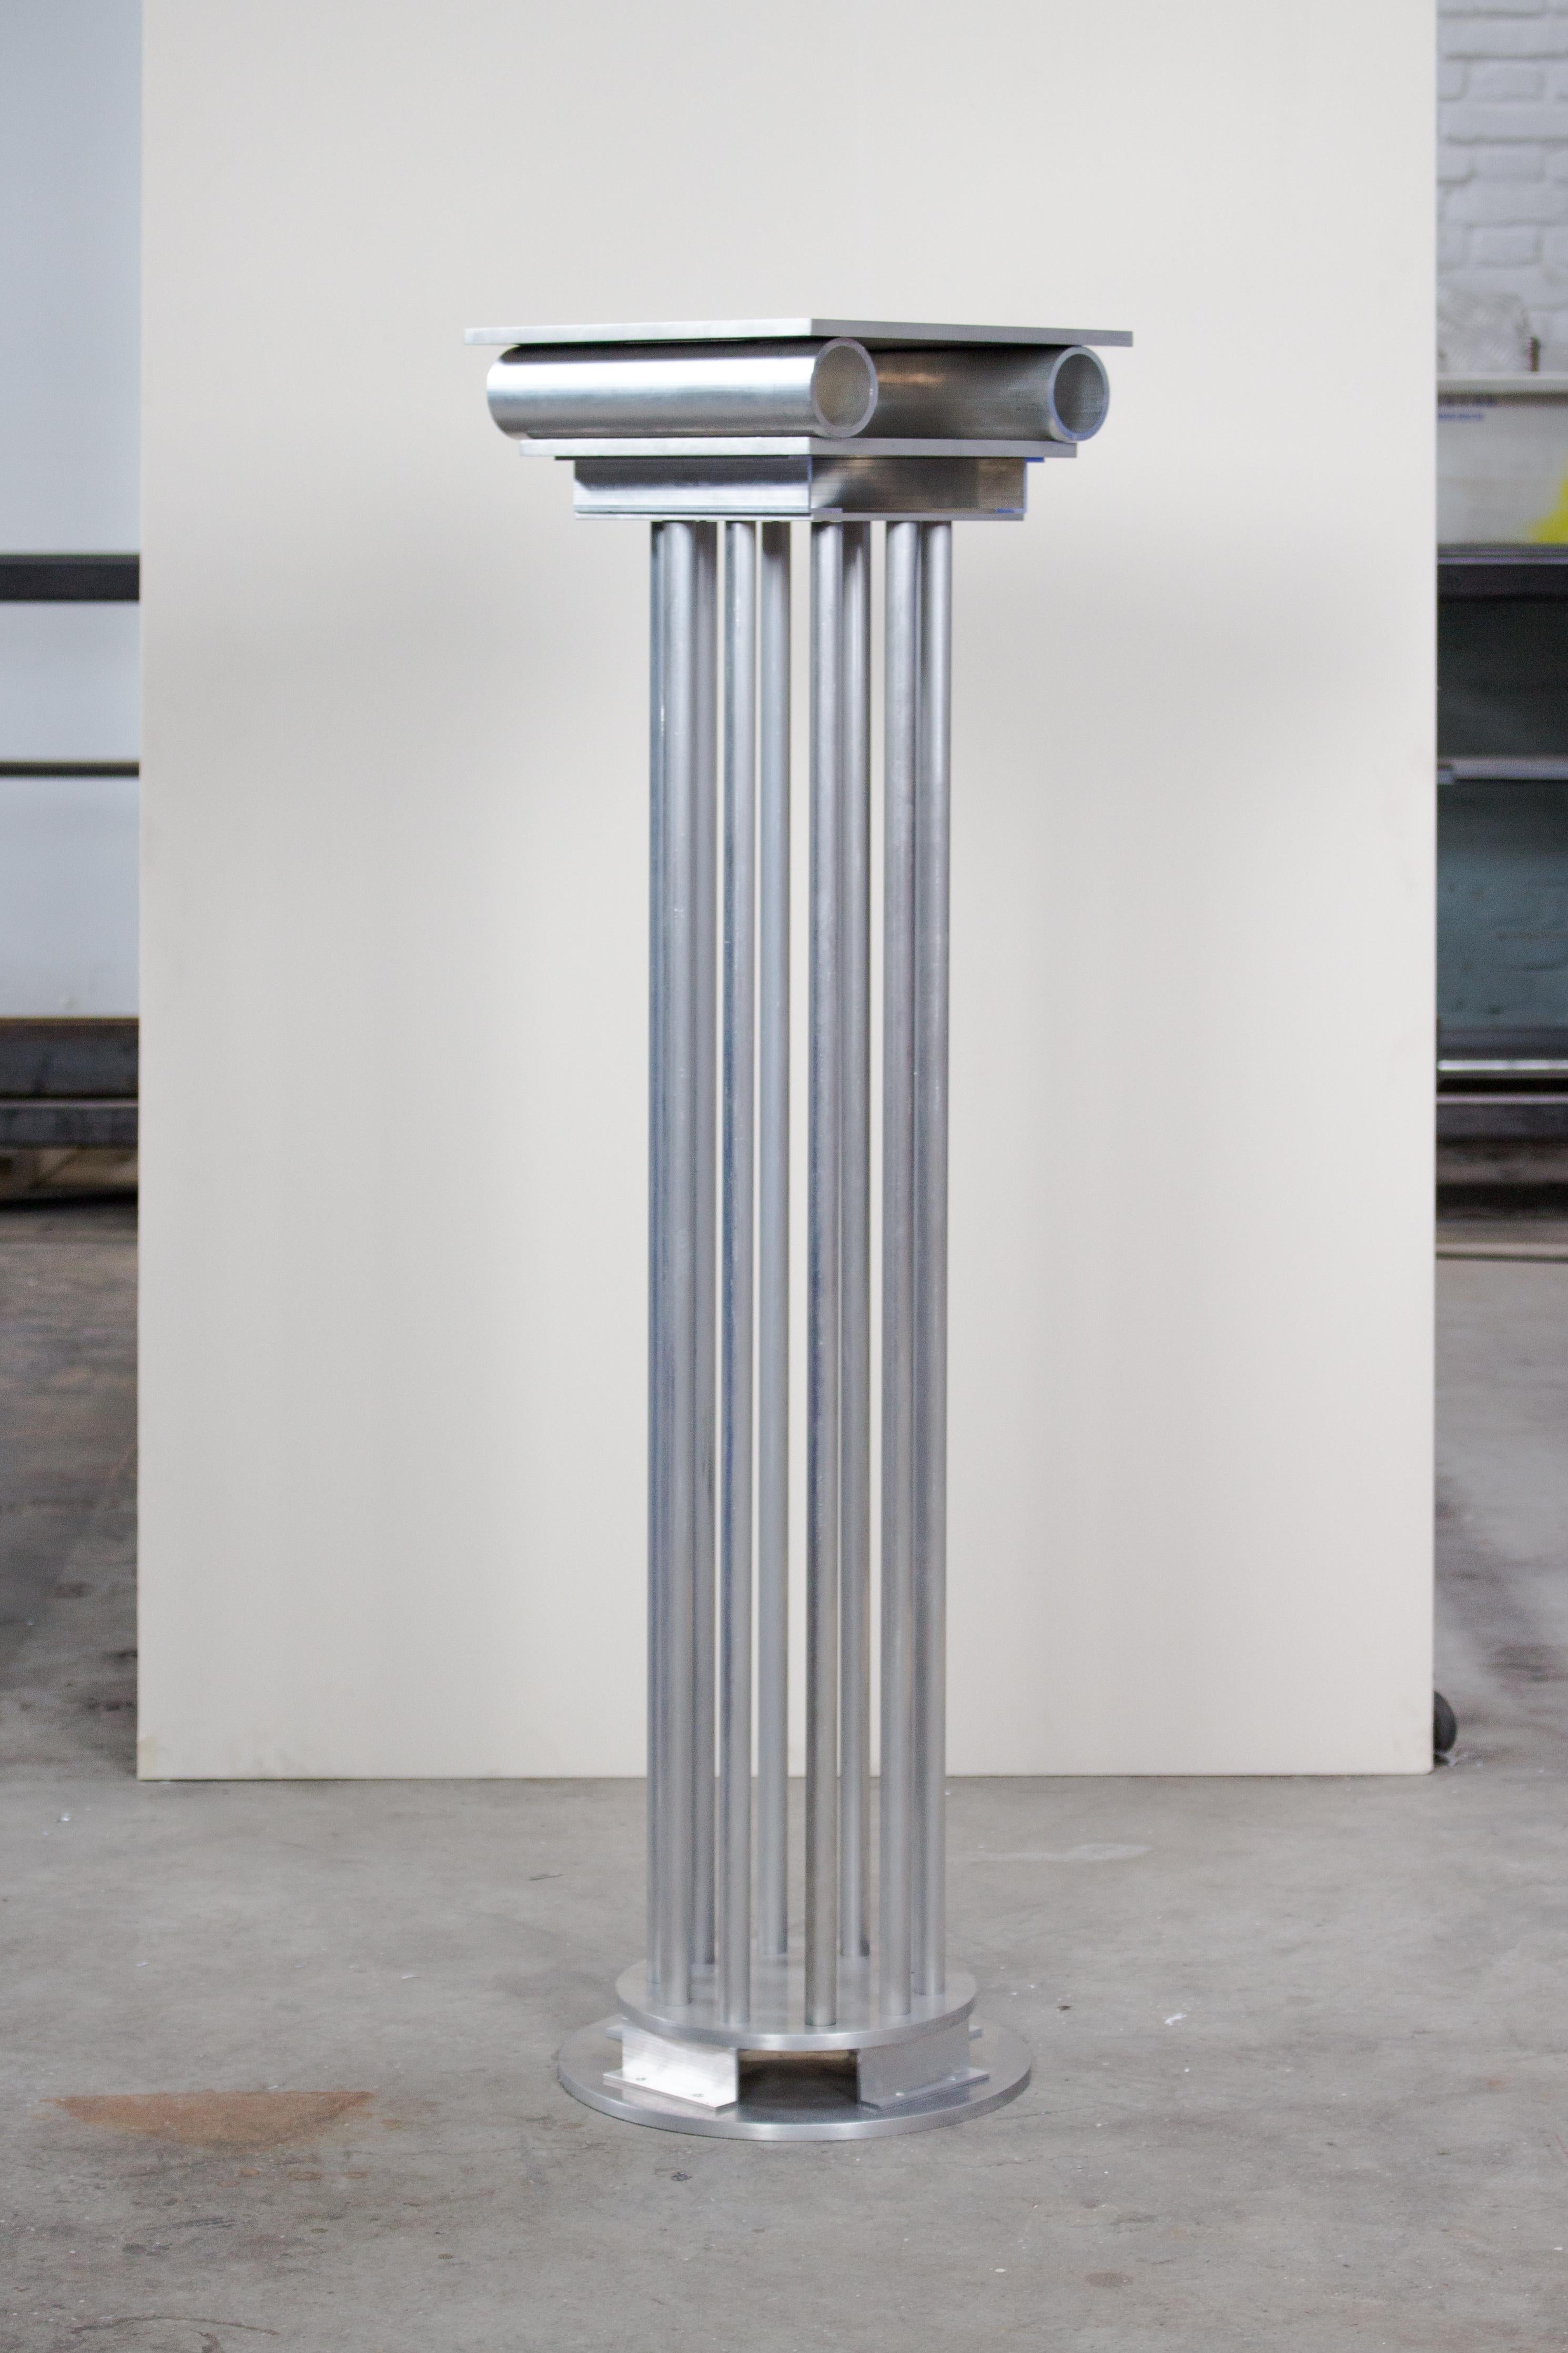 Metope-Säule von Joachim-Morineau Studio
Limitierte Auflage von 8 Stück
Abmessungen: H 110 x T 30 x B 30 cm, 20 kg
MATERIALIEN: Aluminiumrohre, -profile, -schrauben und -bleche
Es besteht die Möglichkeit, eine andere Farbe/ein anderes Finish zu